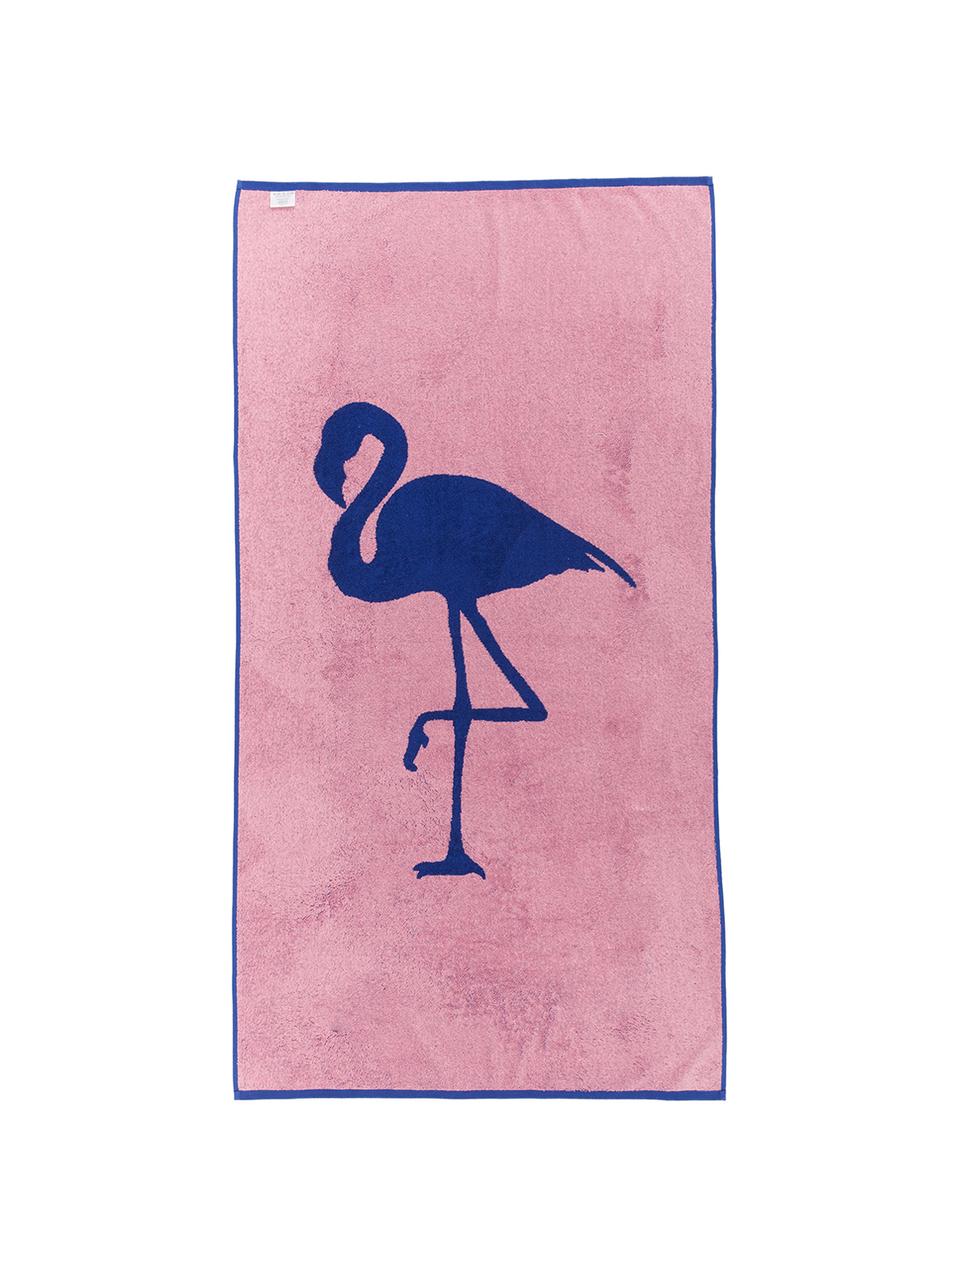 Strandtuch Mina mit Flamingo-Motiv, 100% Baumwolle
leichte Qualität 380 g/m², Blau, Pink, 80 x 160 cm